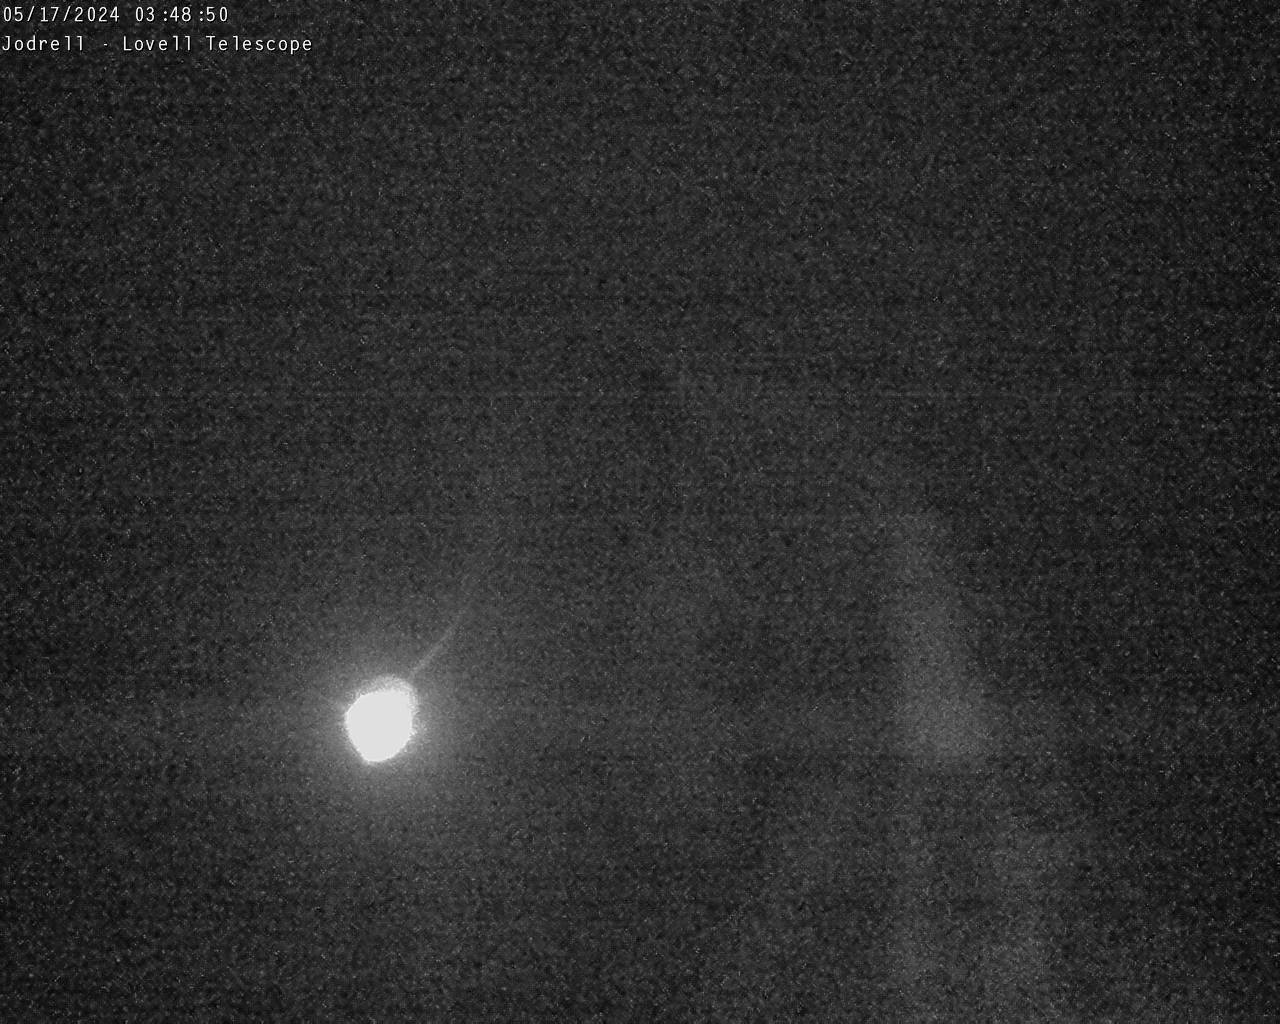 Observatorio Jodrell Bank Sáb. 03:49